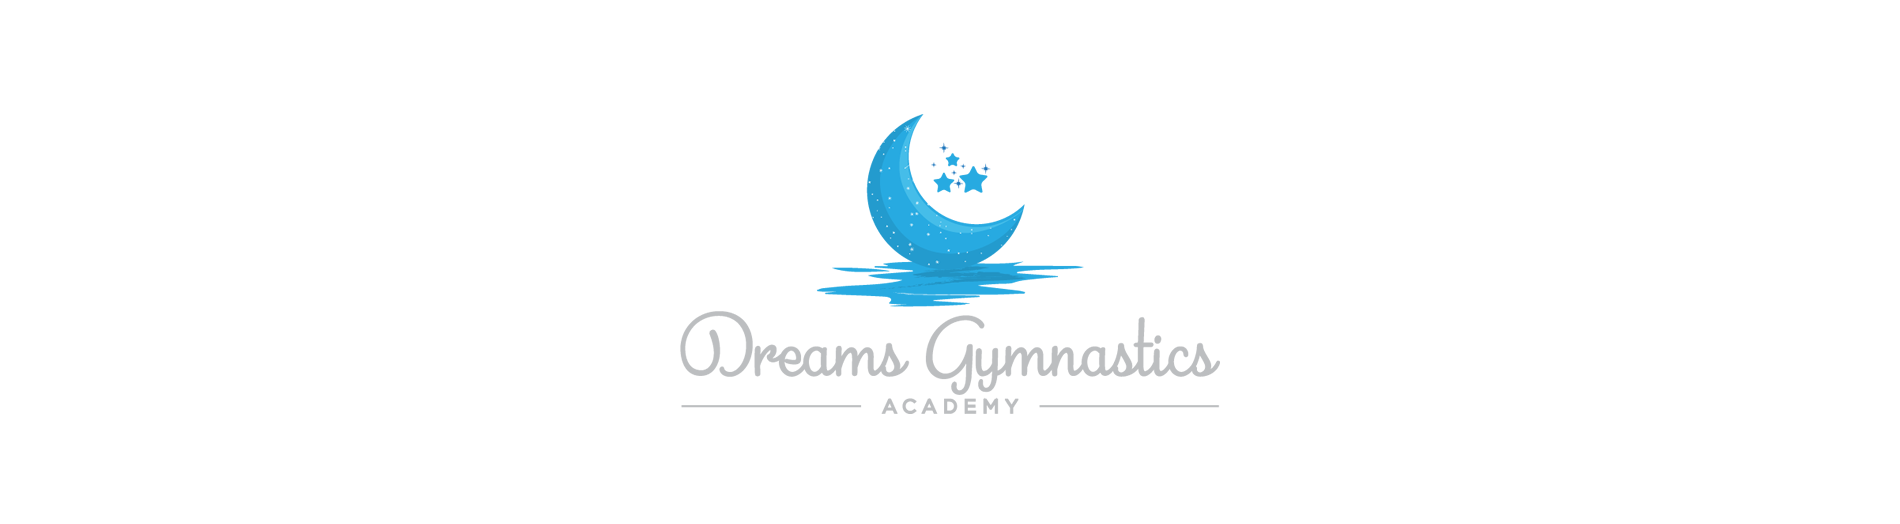 Dreams Gymnastics fundraiser